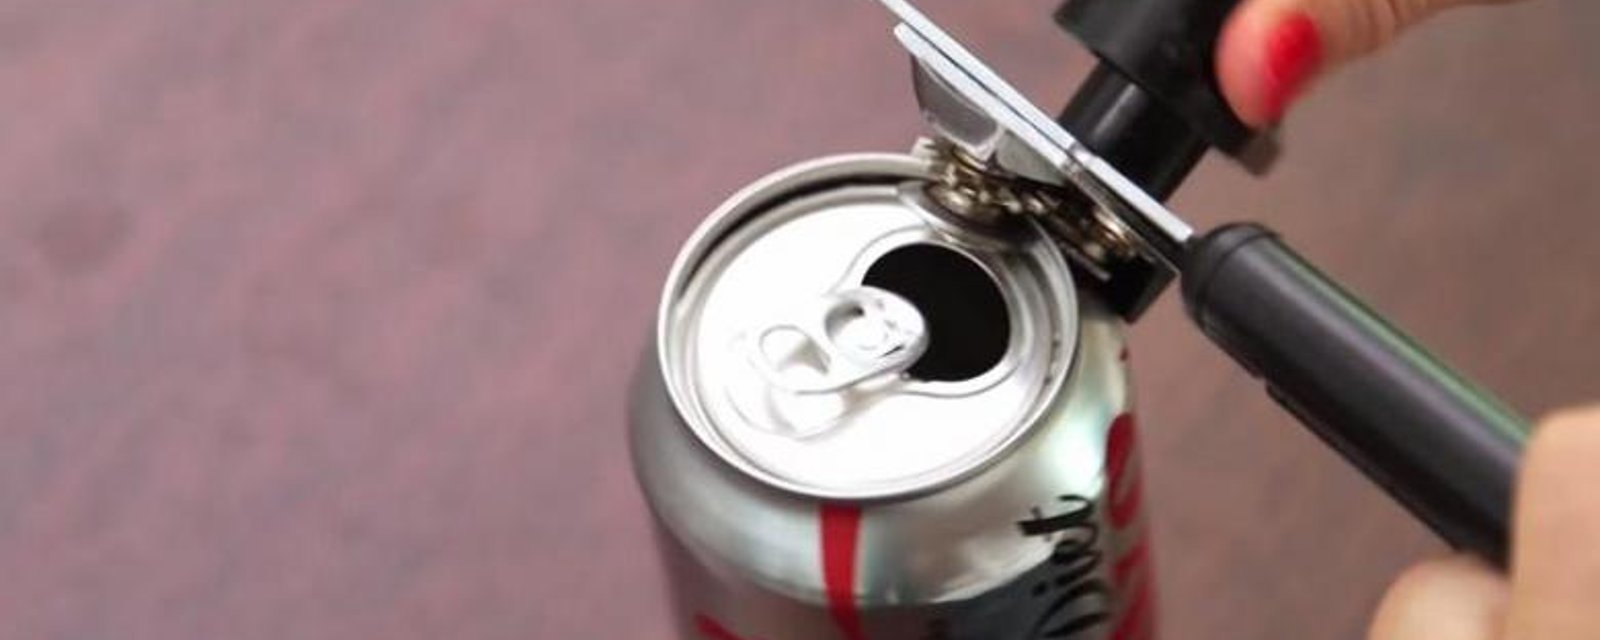 En coupant le dessus d'une canette de cola diète, elle crée quelque chose de mignon et pratique!